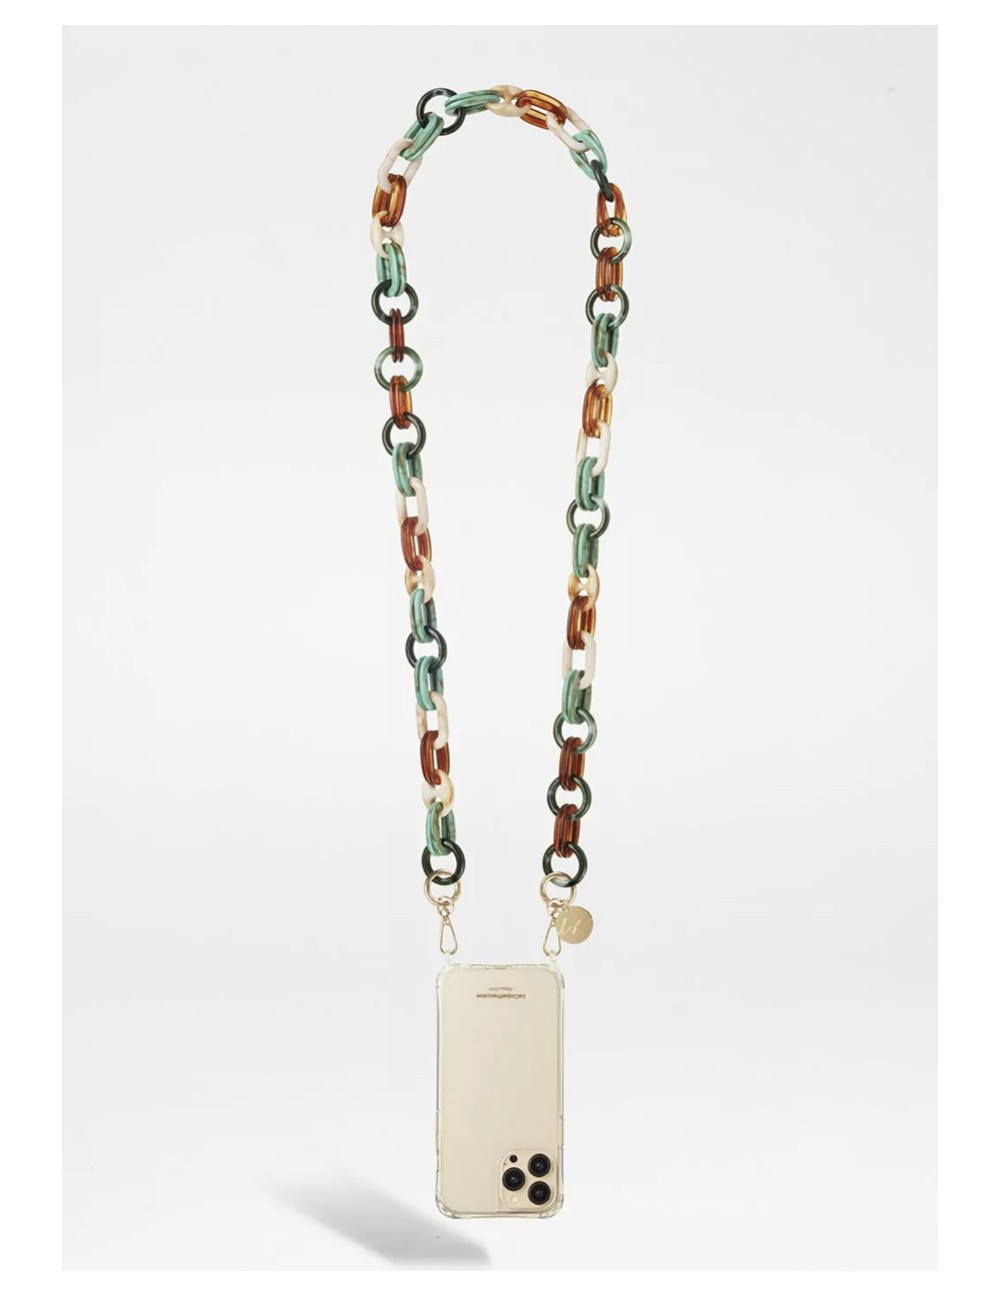 Chaine bijoux Molly 120 cm résine dégradés vert et marrons et mousquetons dorés